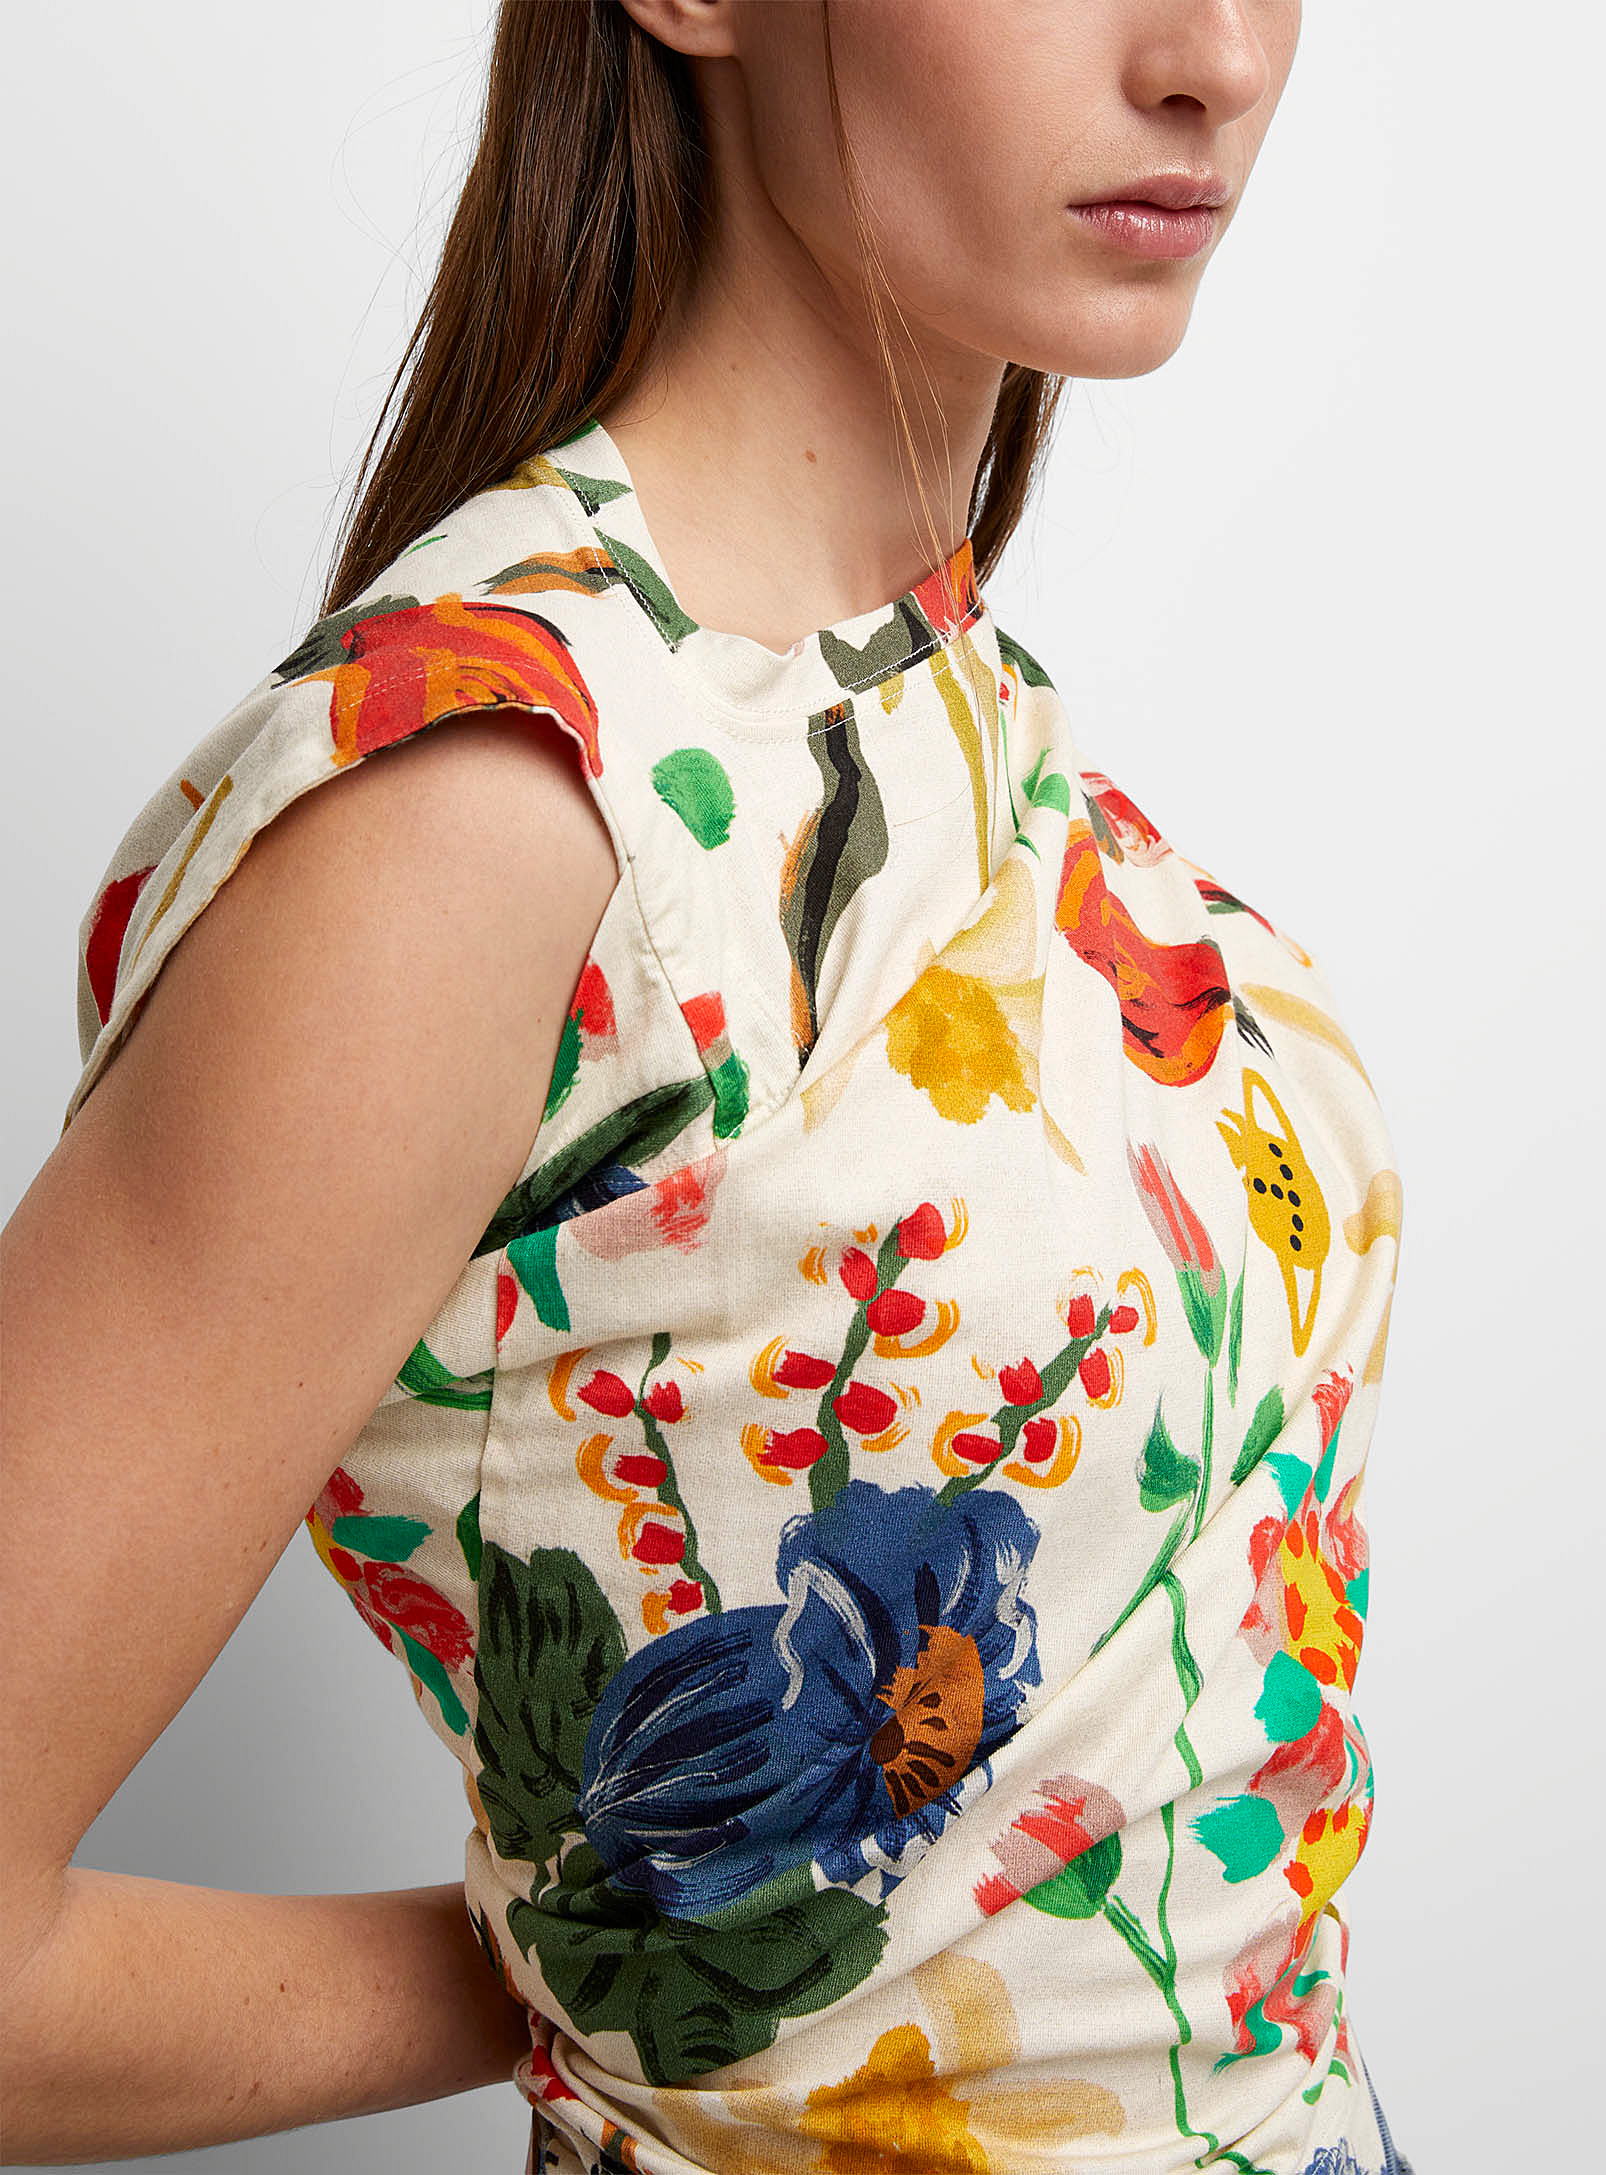 Vivienne Westwood - Le t-shirt Hebo fleurs peintes